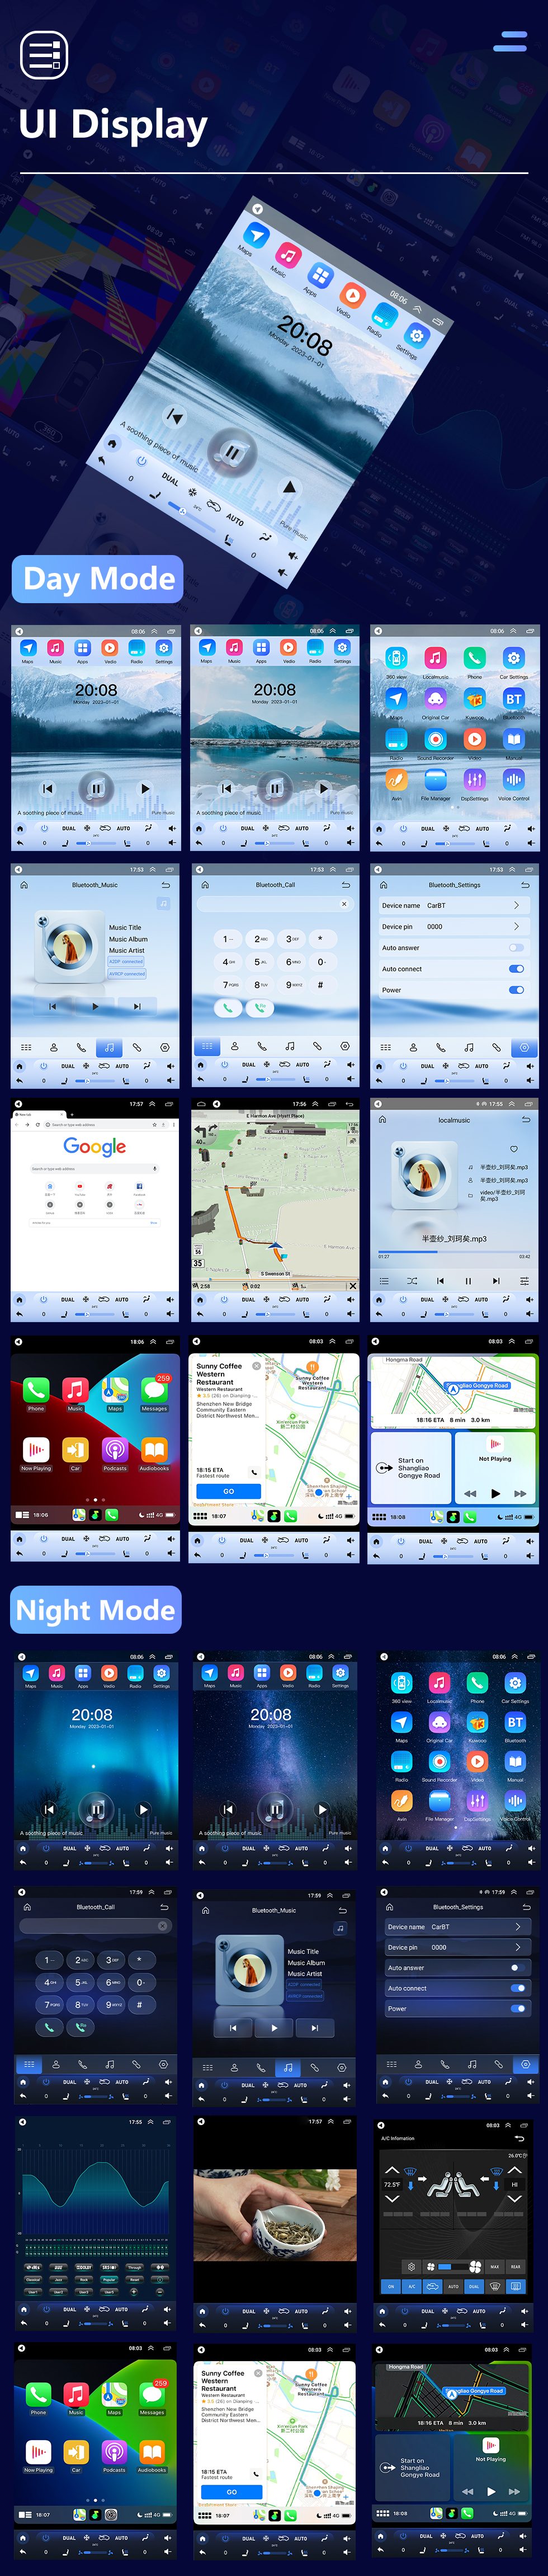 Seicane 2017 MG ZS 9.7 pulgadas Android 10.0 Radio de navegación GPS con pantalla táctil HD Bluetooth WIFI AUX soporte Carplay Cámara retrovisora